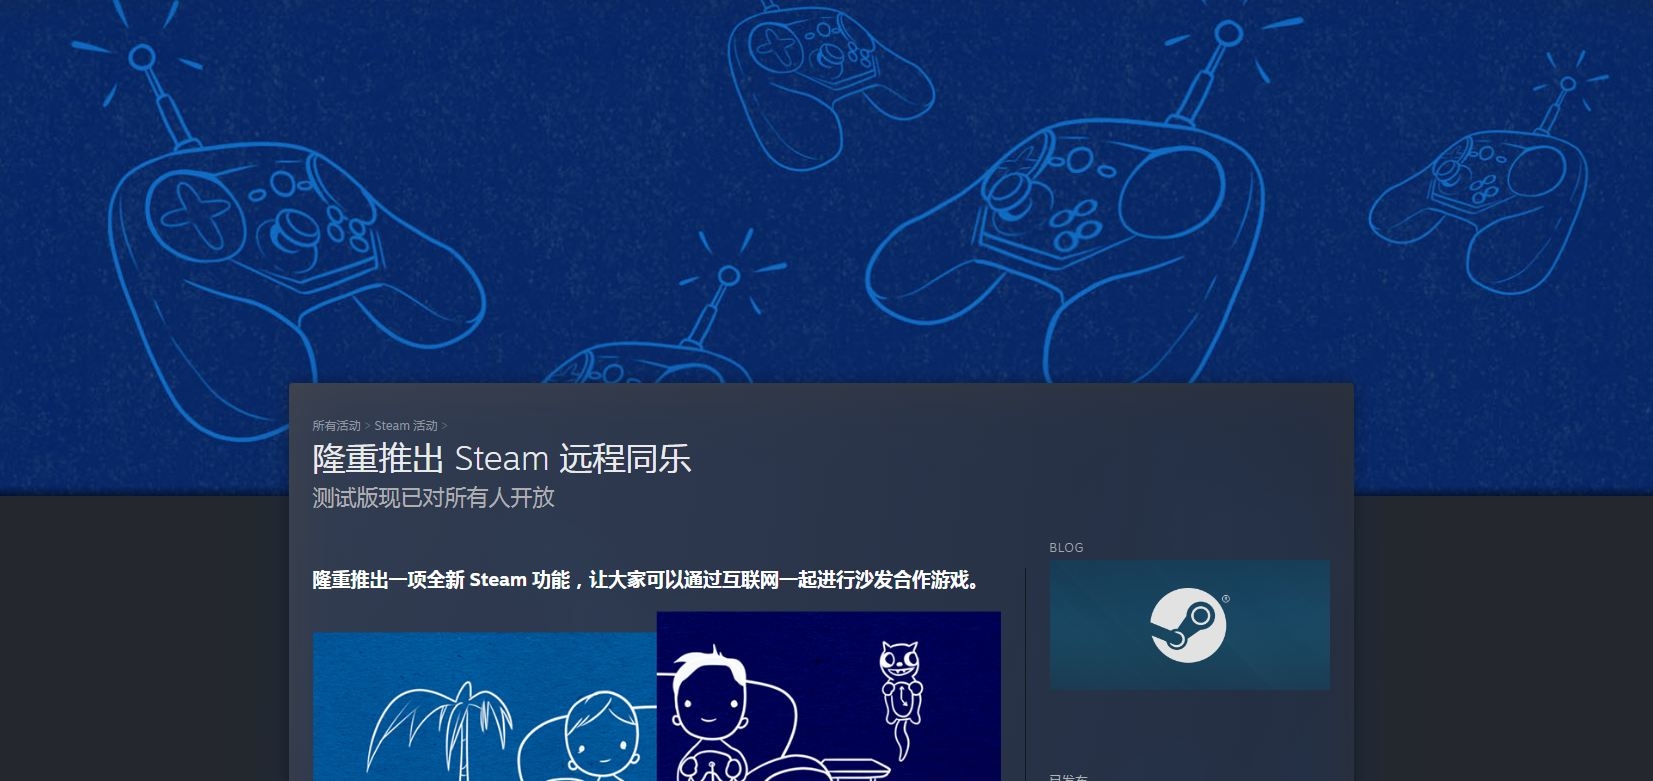 Steam远程同乐功能现已上线 一起进行沙发合作游戏